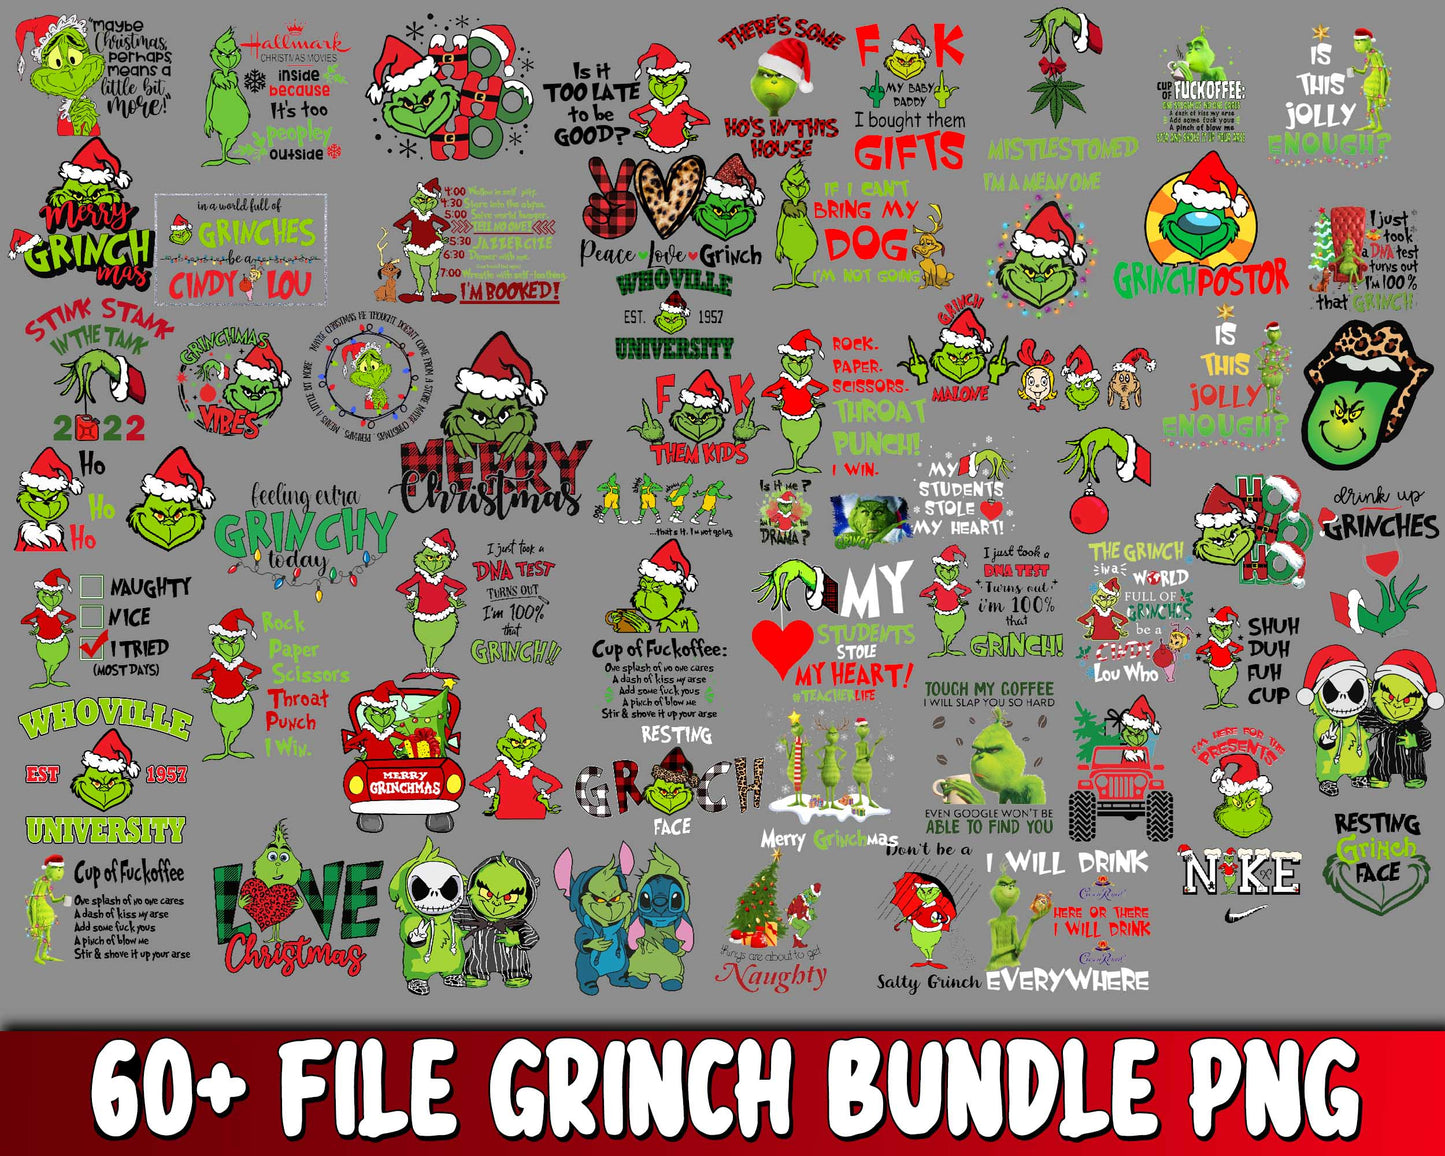 60+ file Grinch bundle PNG , Mega bundle grinch PNG , for Cricut, Silhouette, digital, file cut